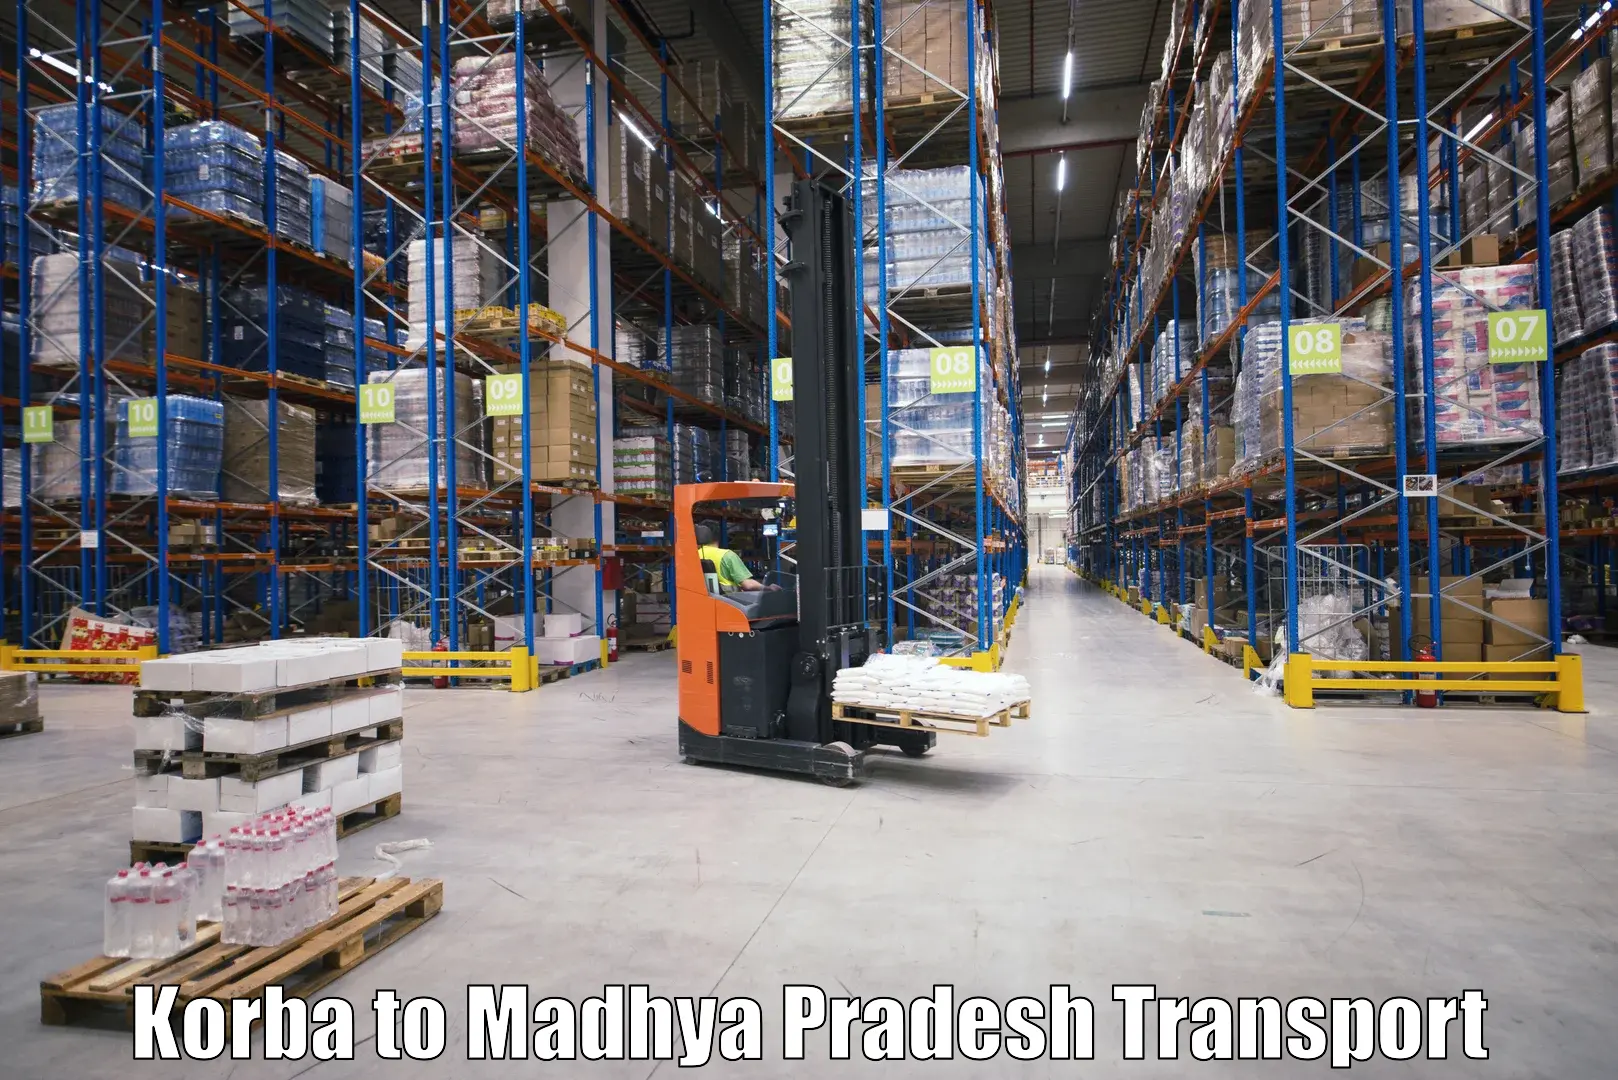 Luggage transport services Korba to Vidisha